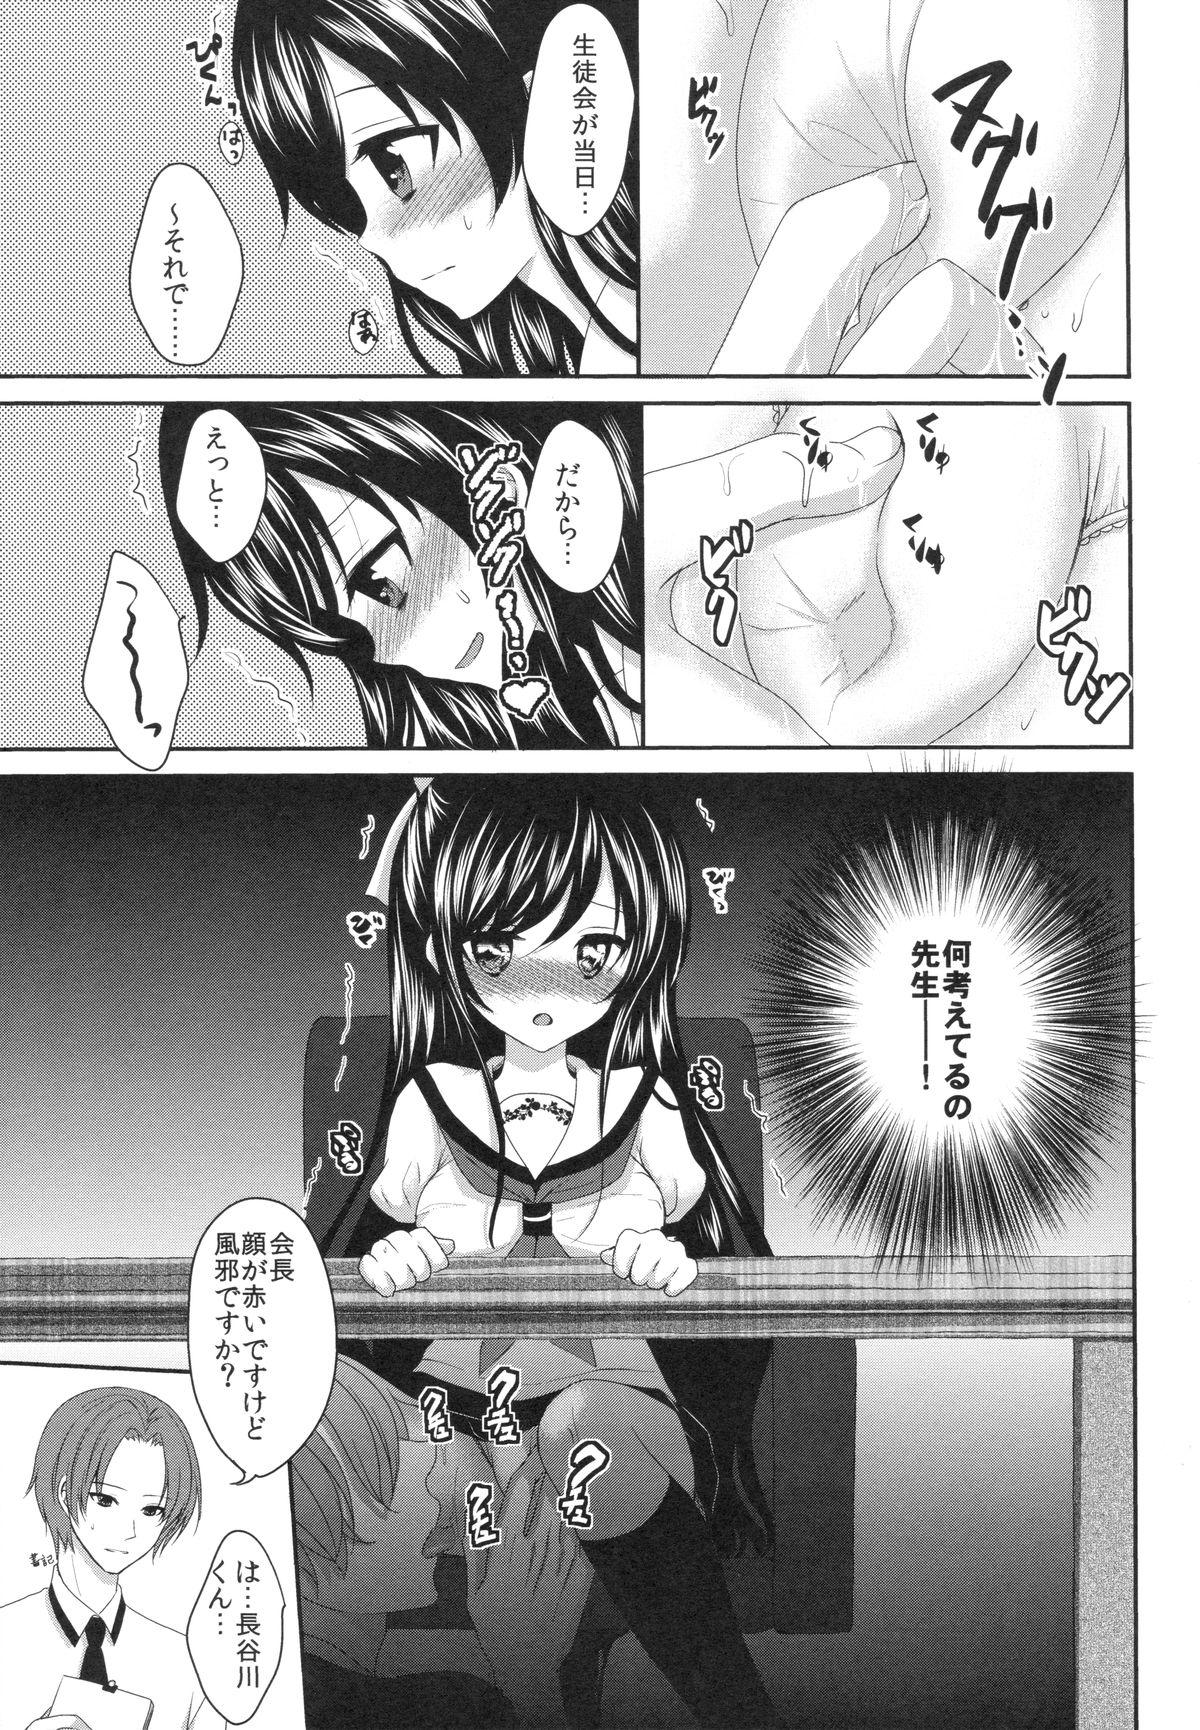 Nasty Ijiwaru Shinaide, Sensei Rebolando - Page 6